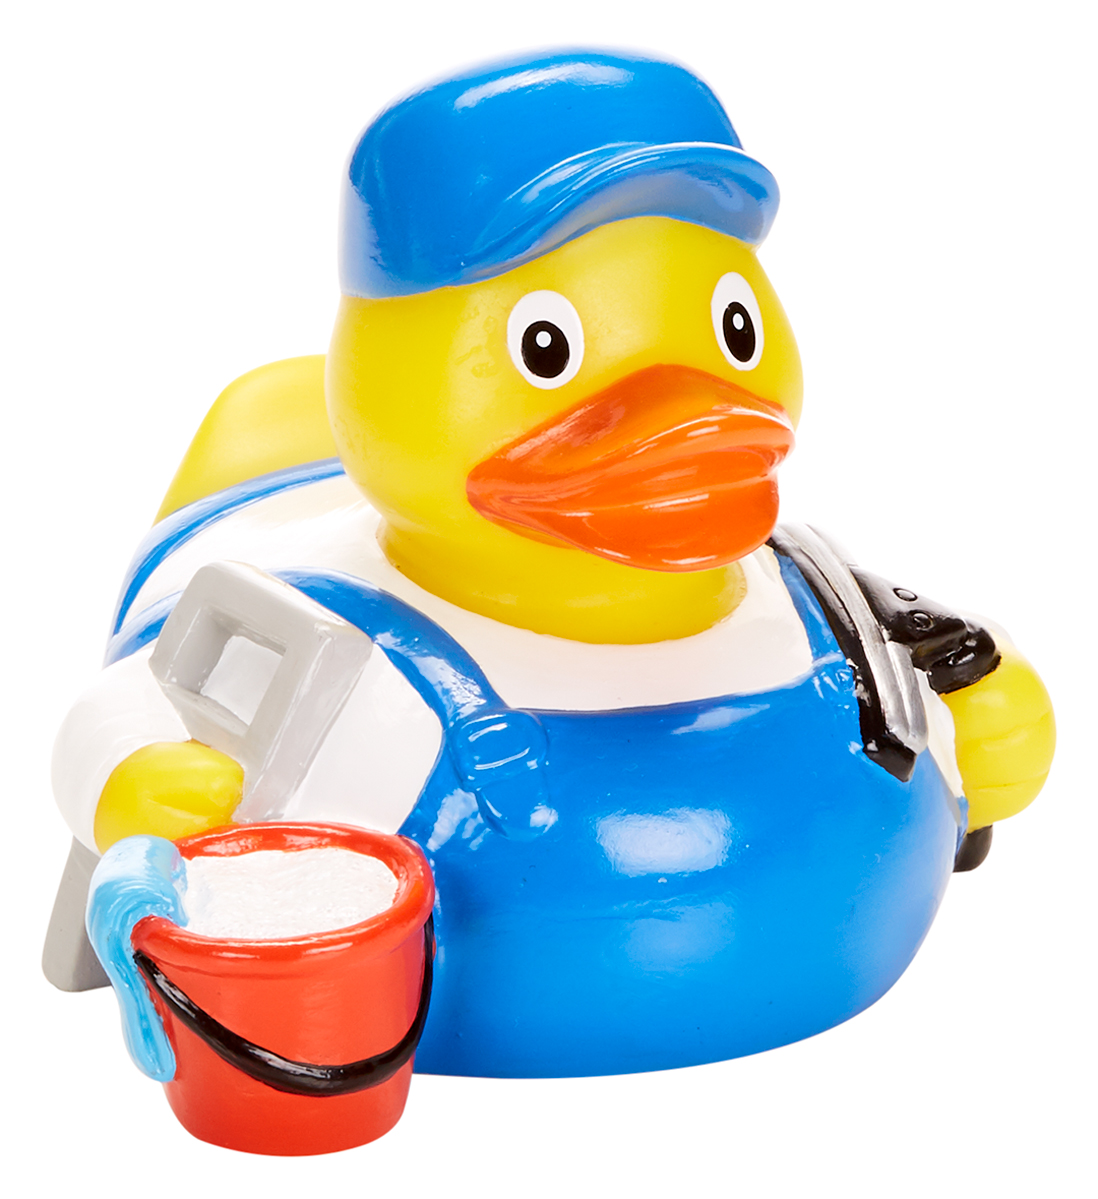 Squeaky duck window cleaner